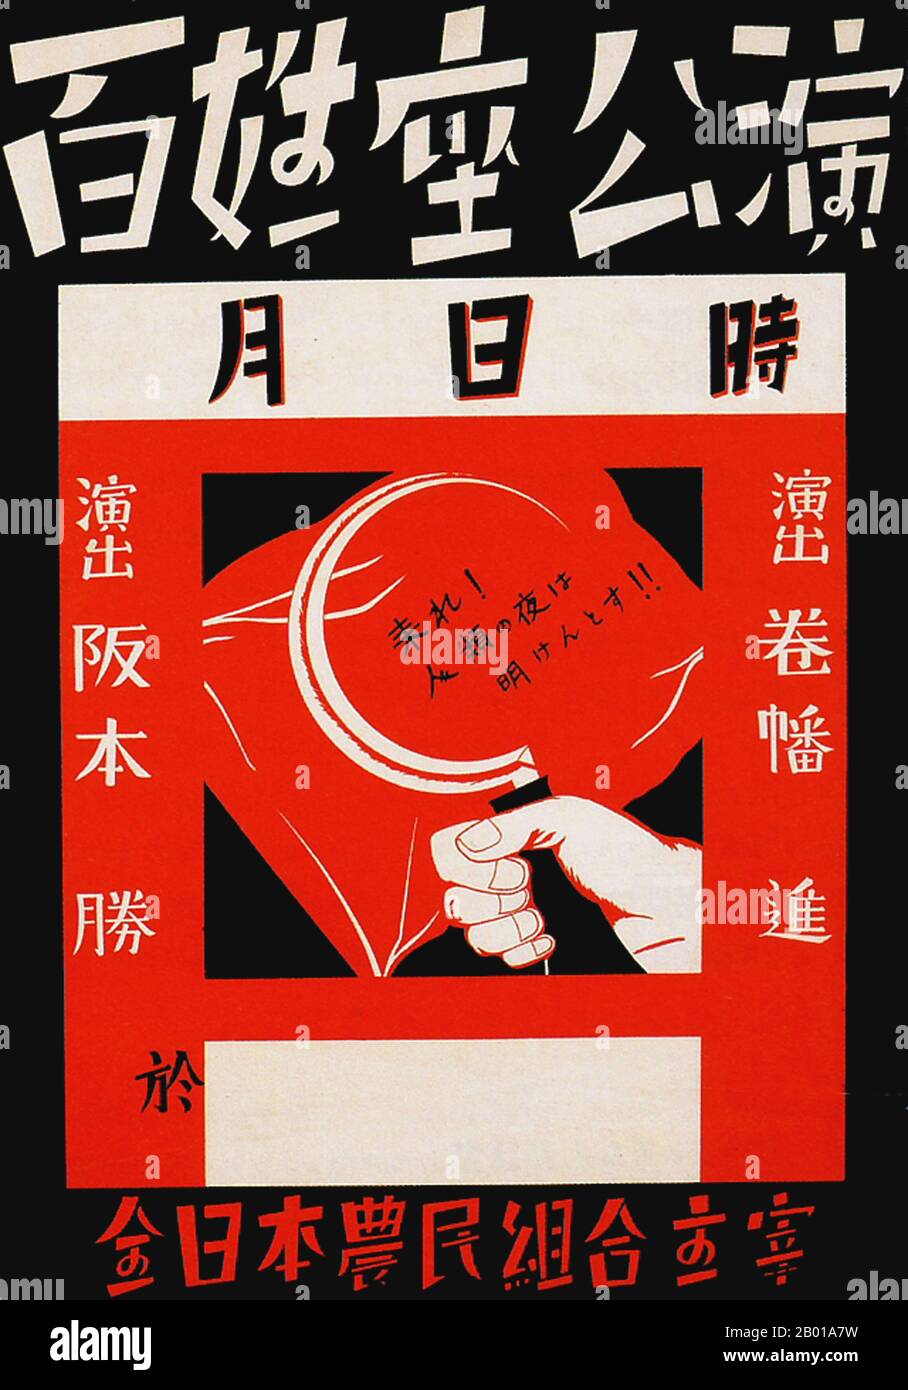 Japan: 'Komm, die Morgendämmerung der Menschheit bricht'. Plakat für eine Bauerntheateraufführung, 1928. Ende 1920s und 1930s entwickelte sich in Japan ein neuer Plakatstil, der den wachsenden Einfluss der Massen in der japanischen Gesellschaft widerspiegelt. Diese Kunstplakate waren stark von den aufkommenden politischen Kräften des Kommunismus und des Faschismus in Europa und der Sowjetunion beeinflusst und nahmen einen Stil an, der kühne Slogans mit künstlerischen Themen einarbeitete, die vom linken sozialistischen Realismus über Staatismus und staatlich gelenkte öffentliche Wohlfahrt bis hin zu Militarismus und imperialistischem Expansionismus reichten. Stockfoto